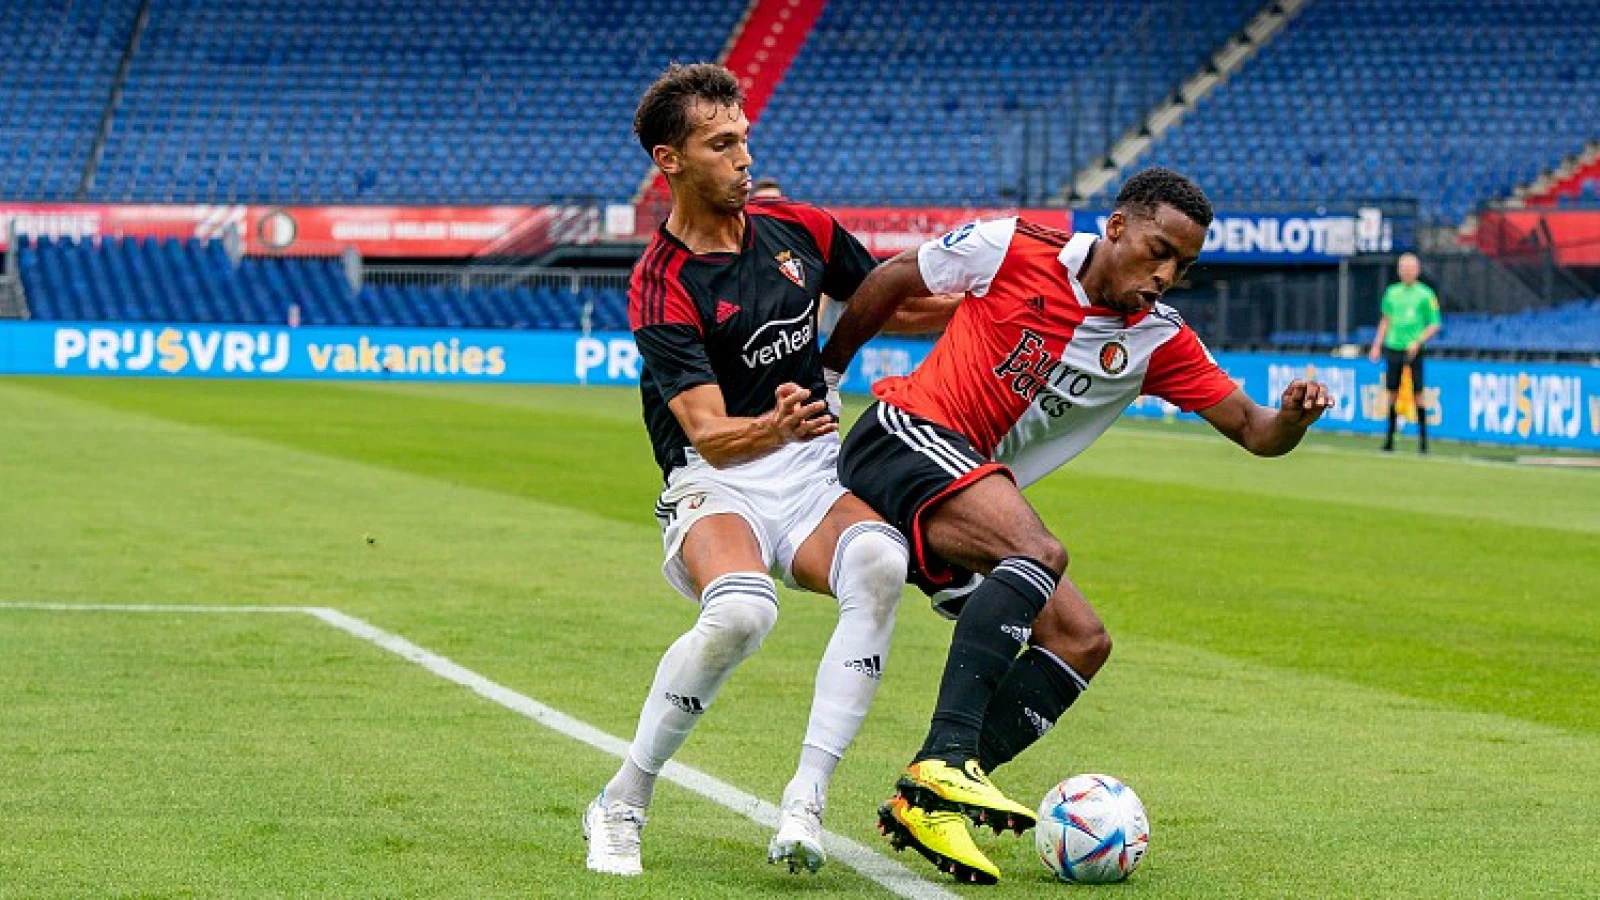 VI: 'Feyenoord gaat seizoen in met nieuwe speelstijl'